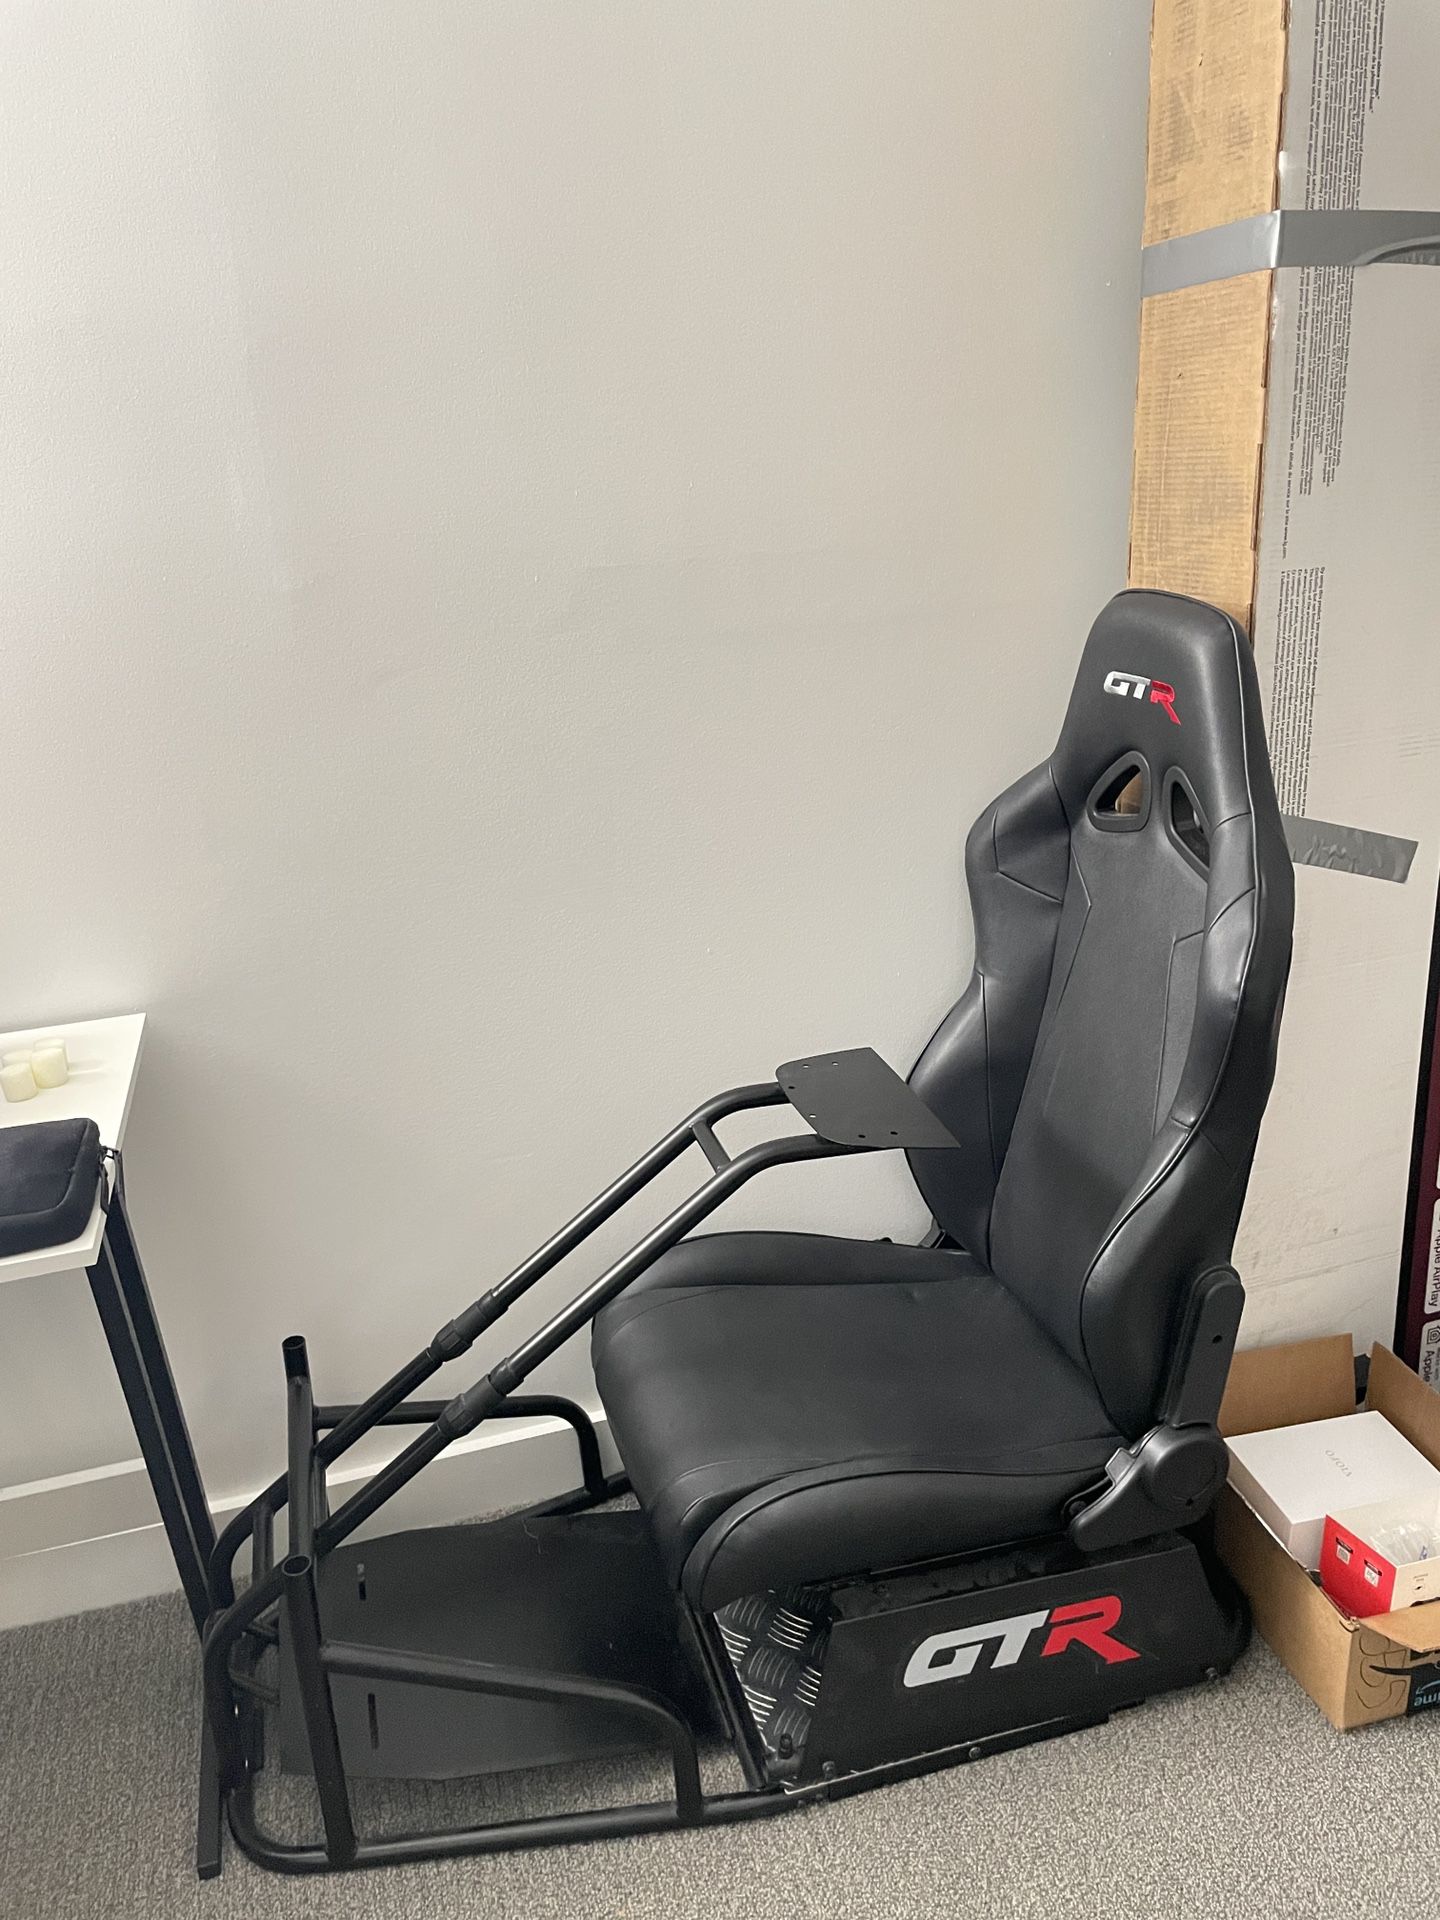 Racing simulator chair